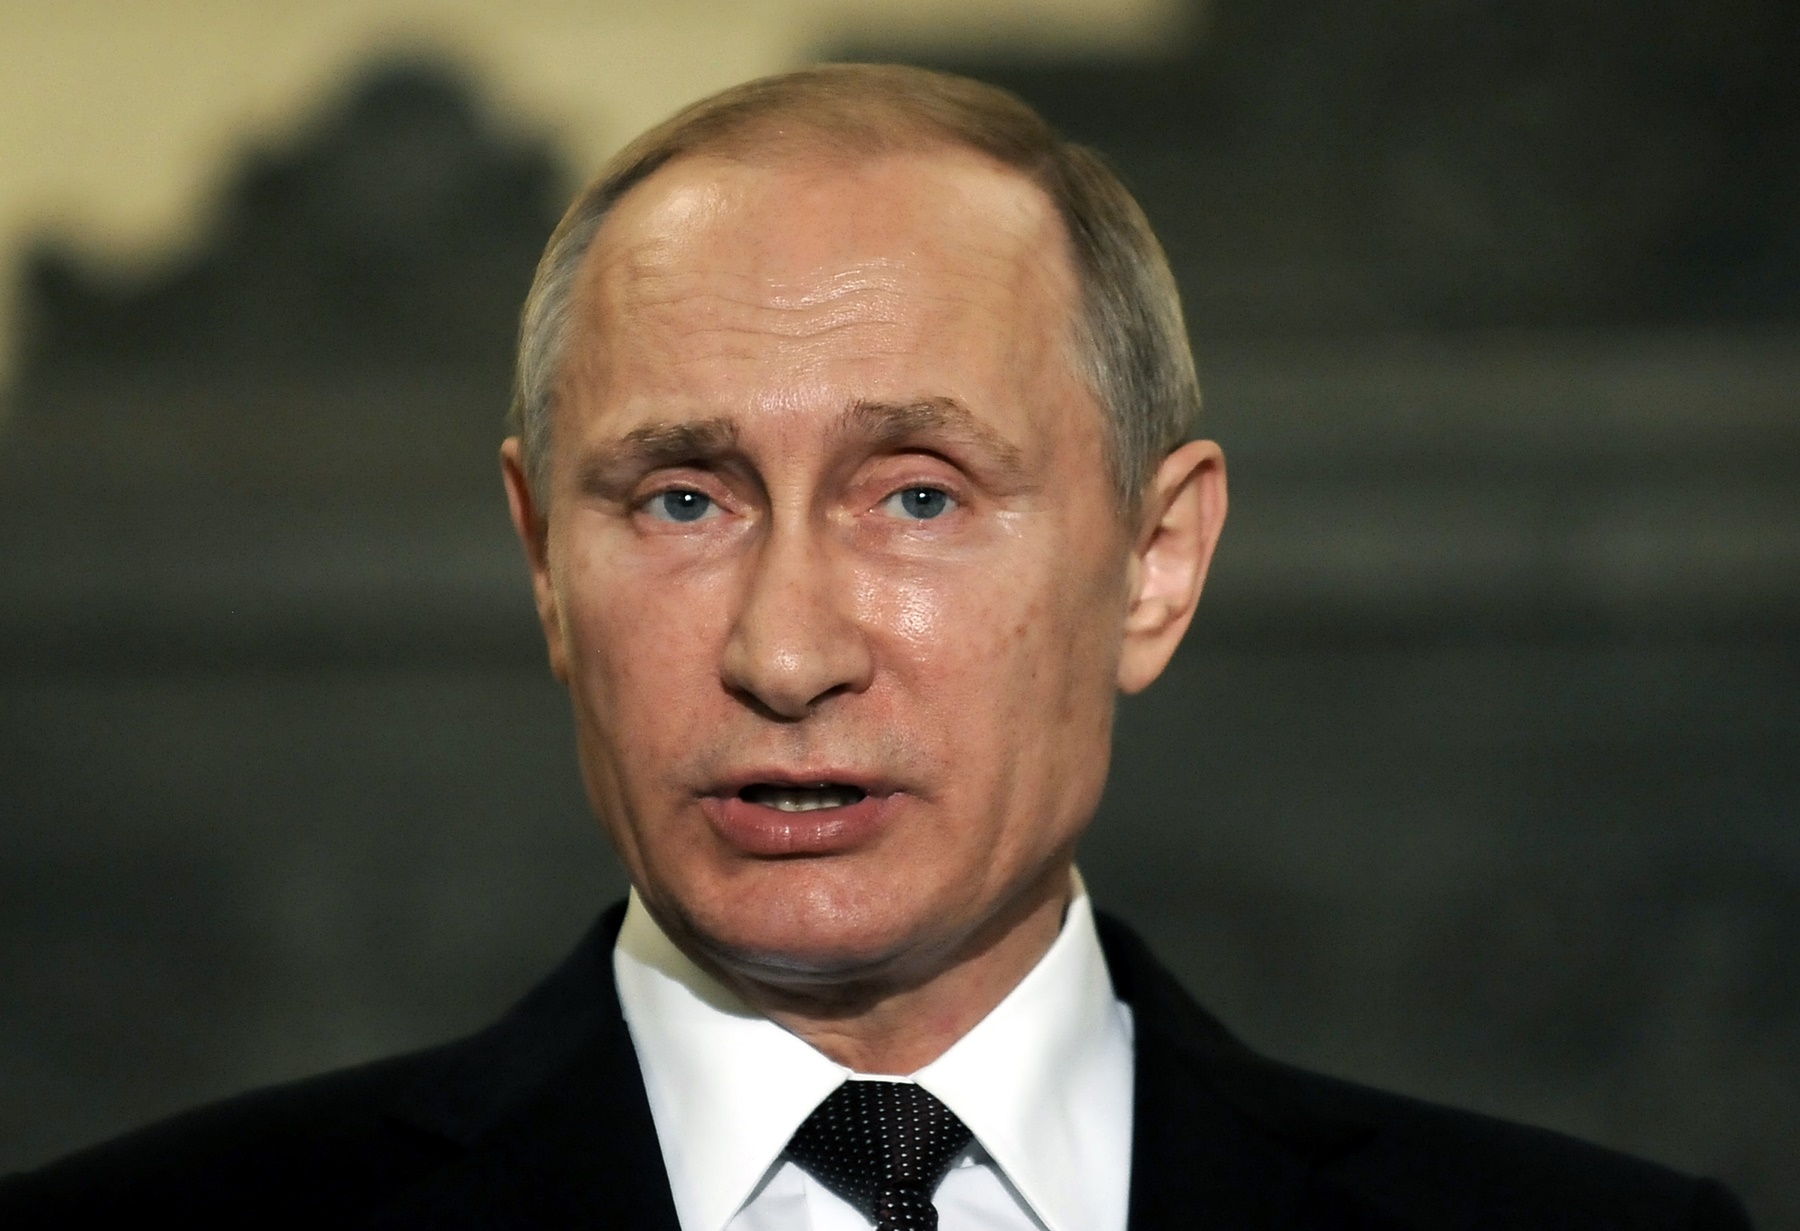 Ο σκληρός Πούτιν: Νέες φωτογραφίες στο φως, “μήνυμα” στους αντιπάλους